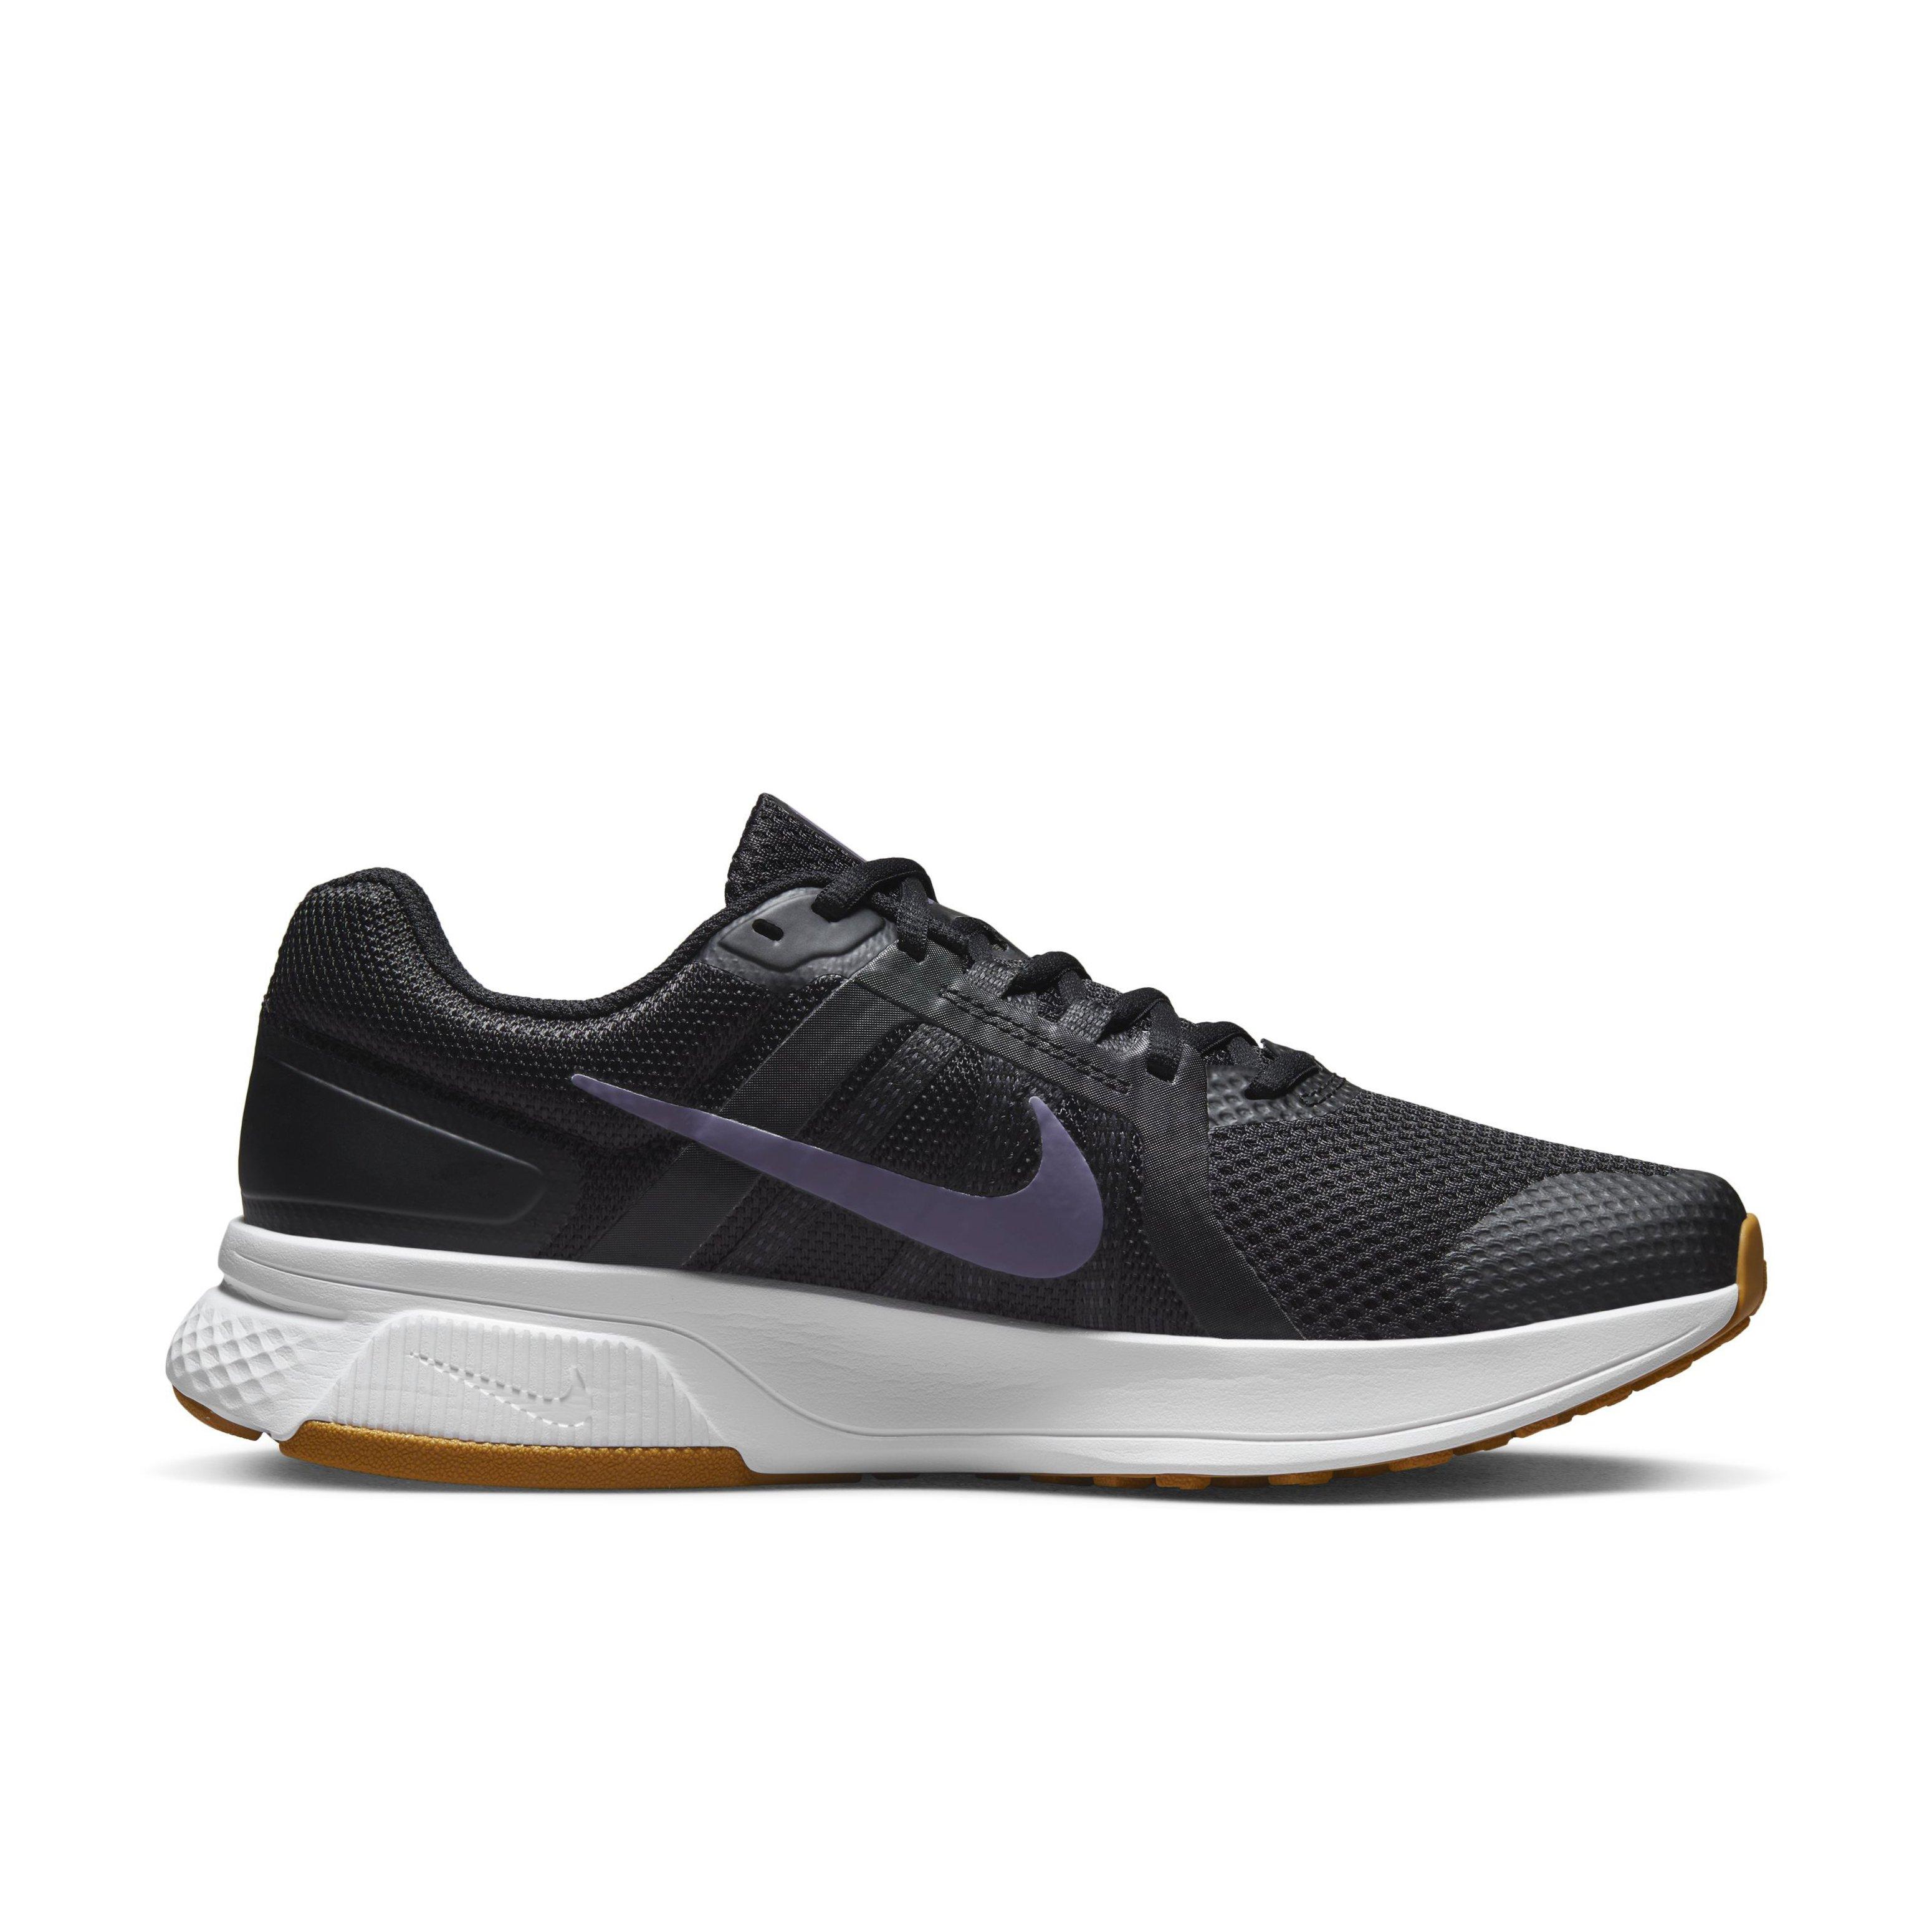 Nike Run Swift 2 "Black/Canyon Suede" Men's Running Shoe